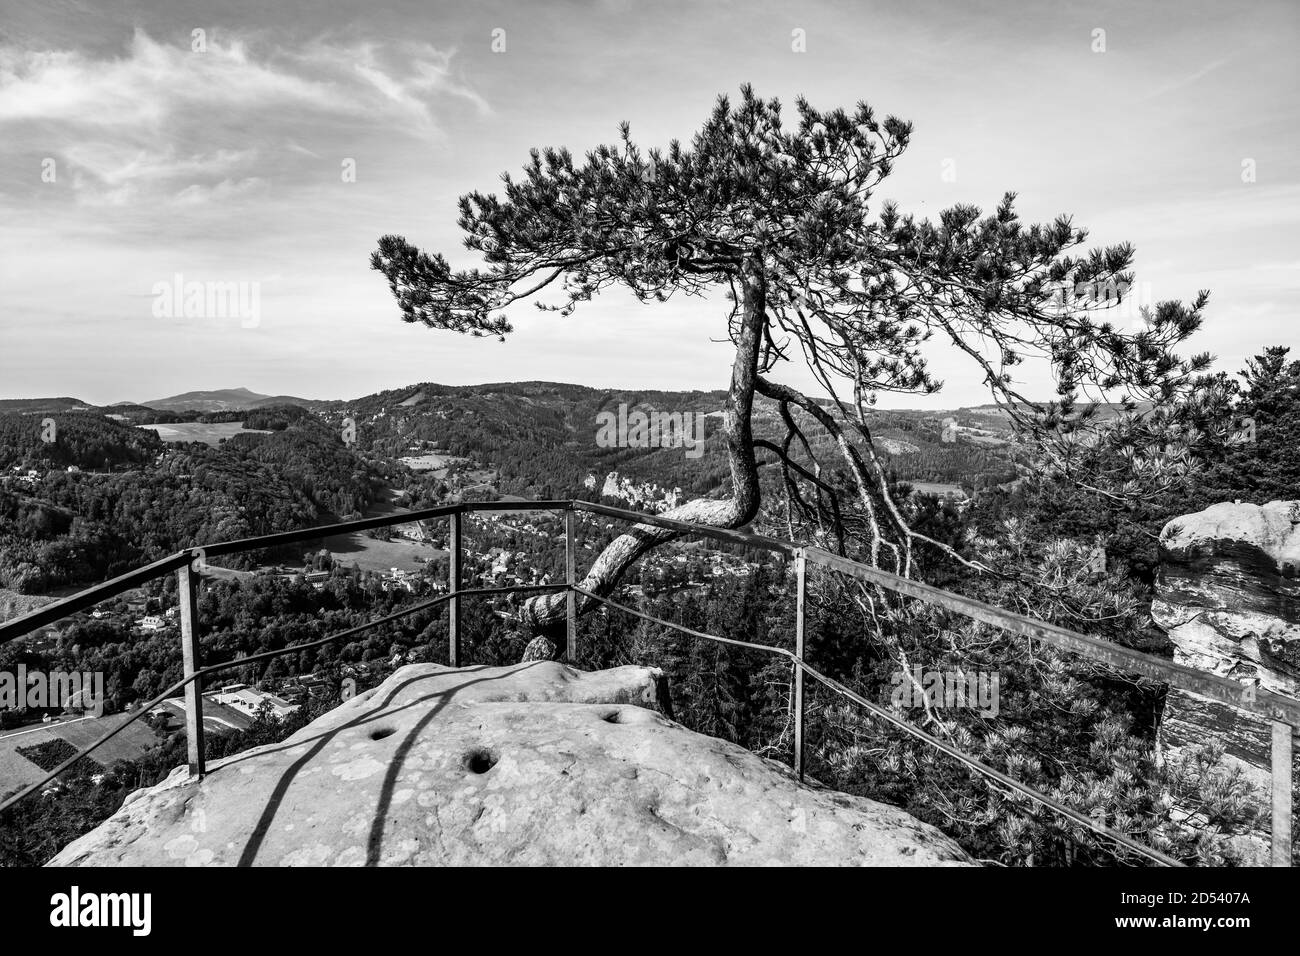 Punto di osservazione di Husnik sulla cima della formazione di pietra arenaria. Besedice Rocks in Bohemian Paradise, ceco: Cesky raj, Repubblica Ceca. Immagine in bianco e nero. Foto Stock